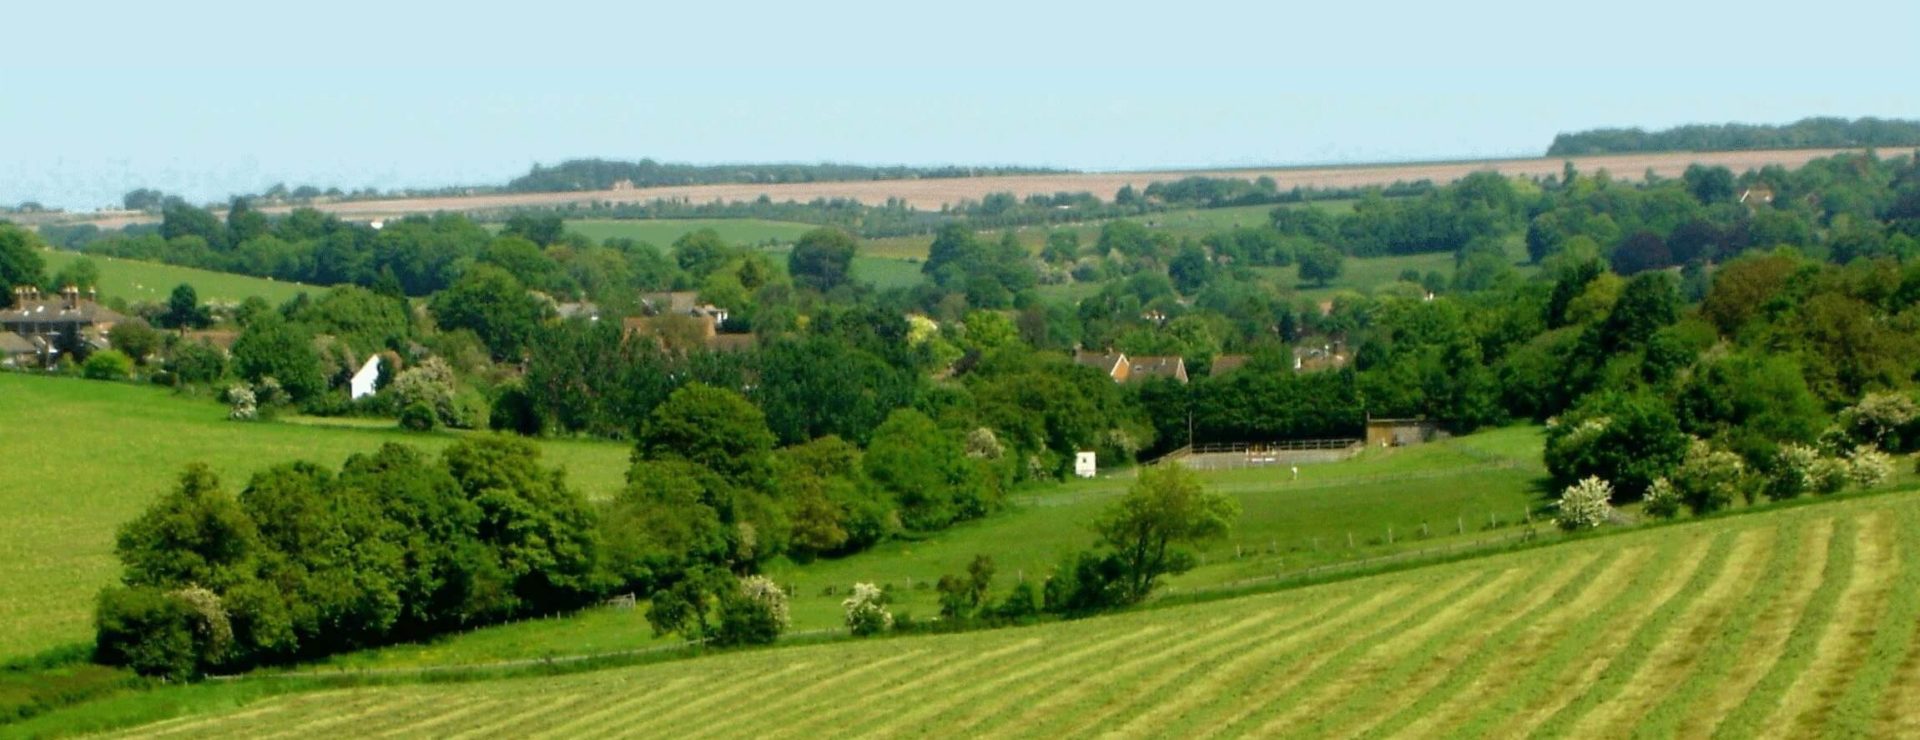 ashford countryside